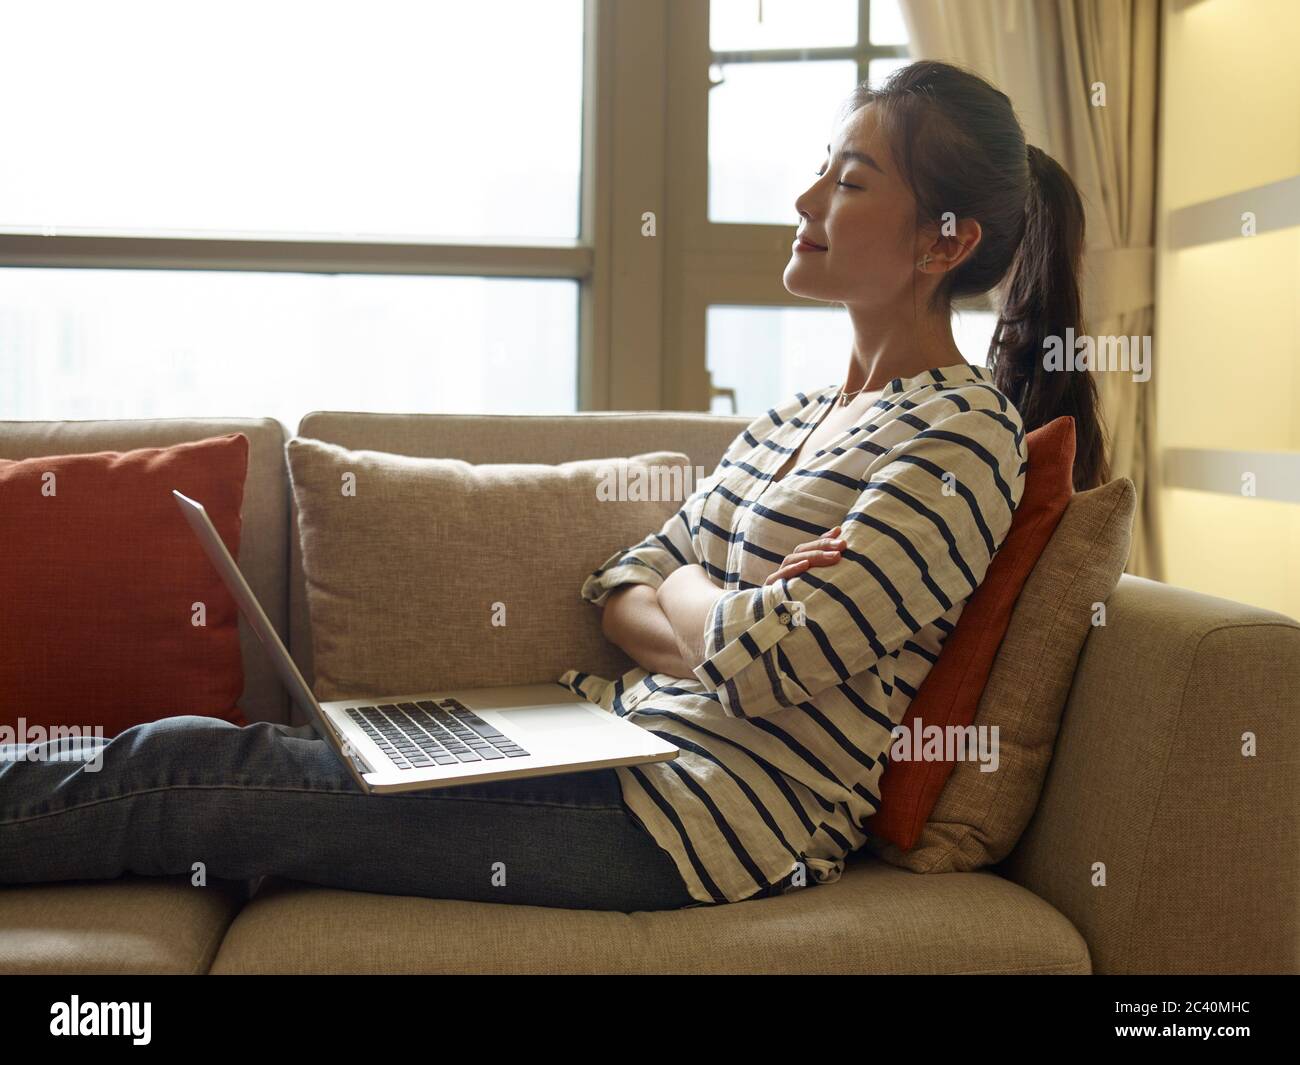 jeune femme asiatique travaillant à domicile assis sur un canapé à l'aide d'un ordinateur portable Banque D'Images